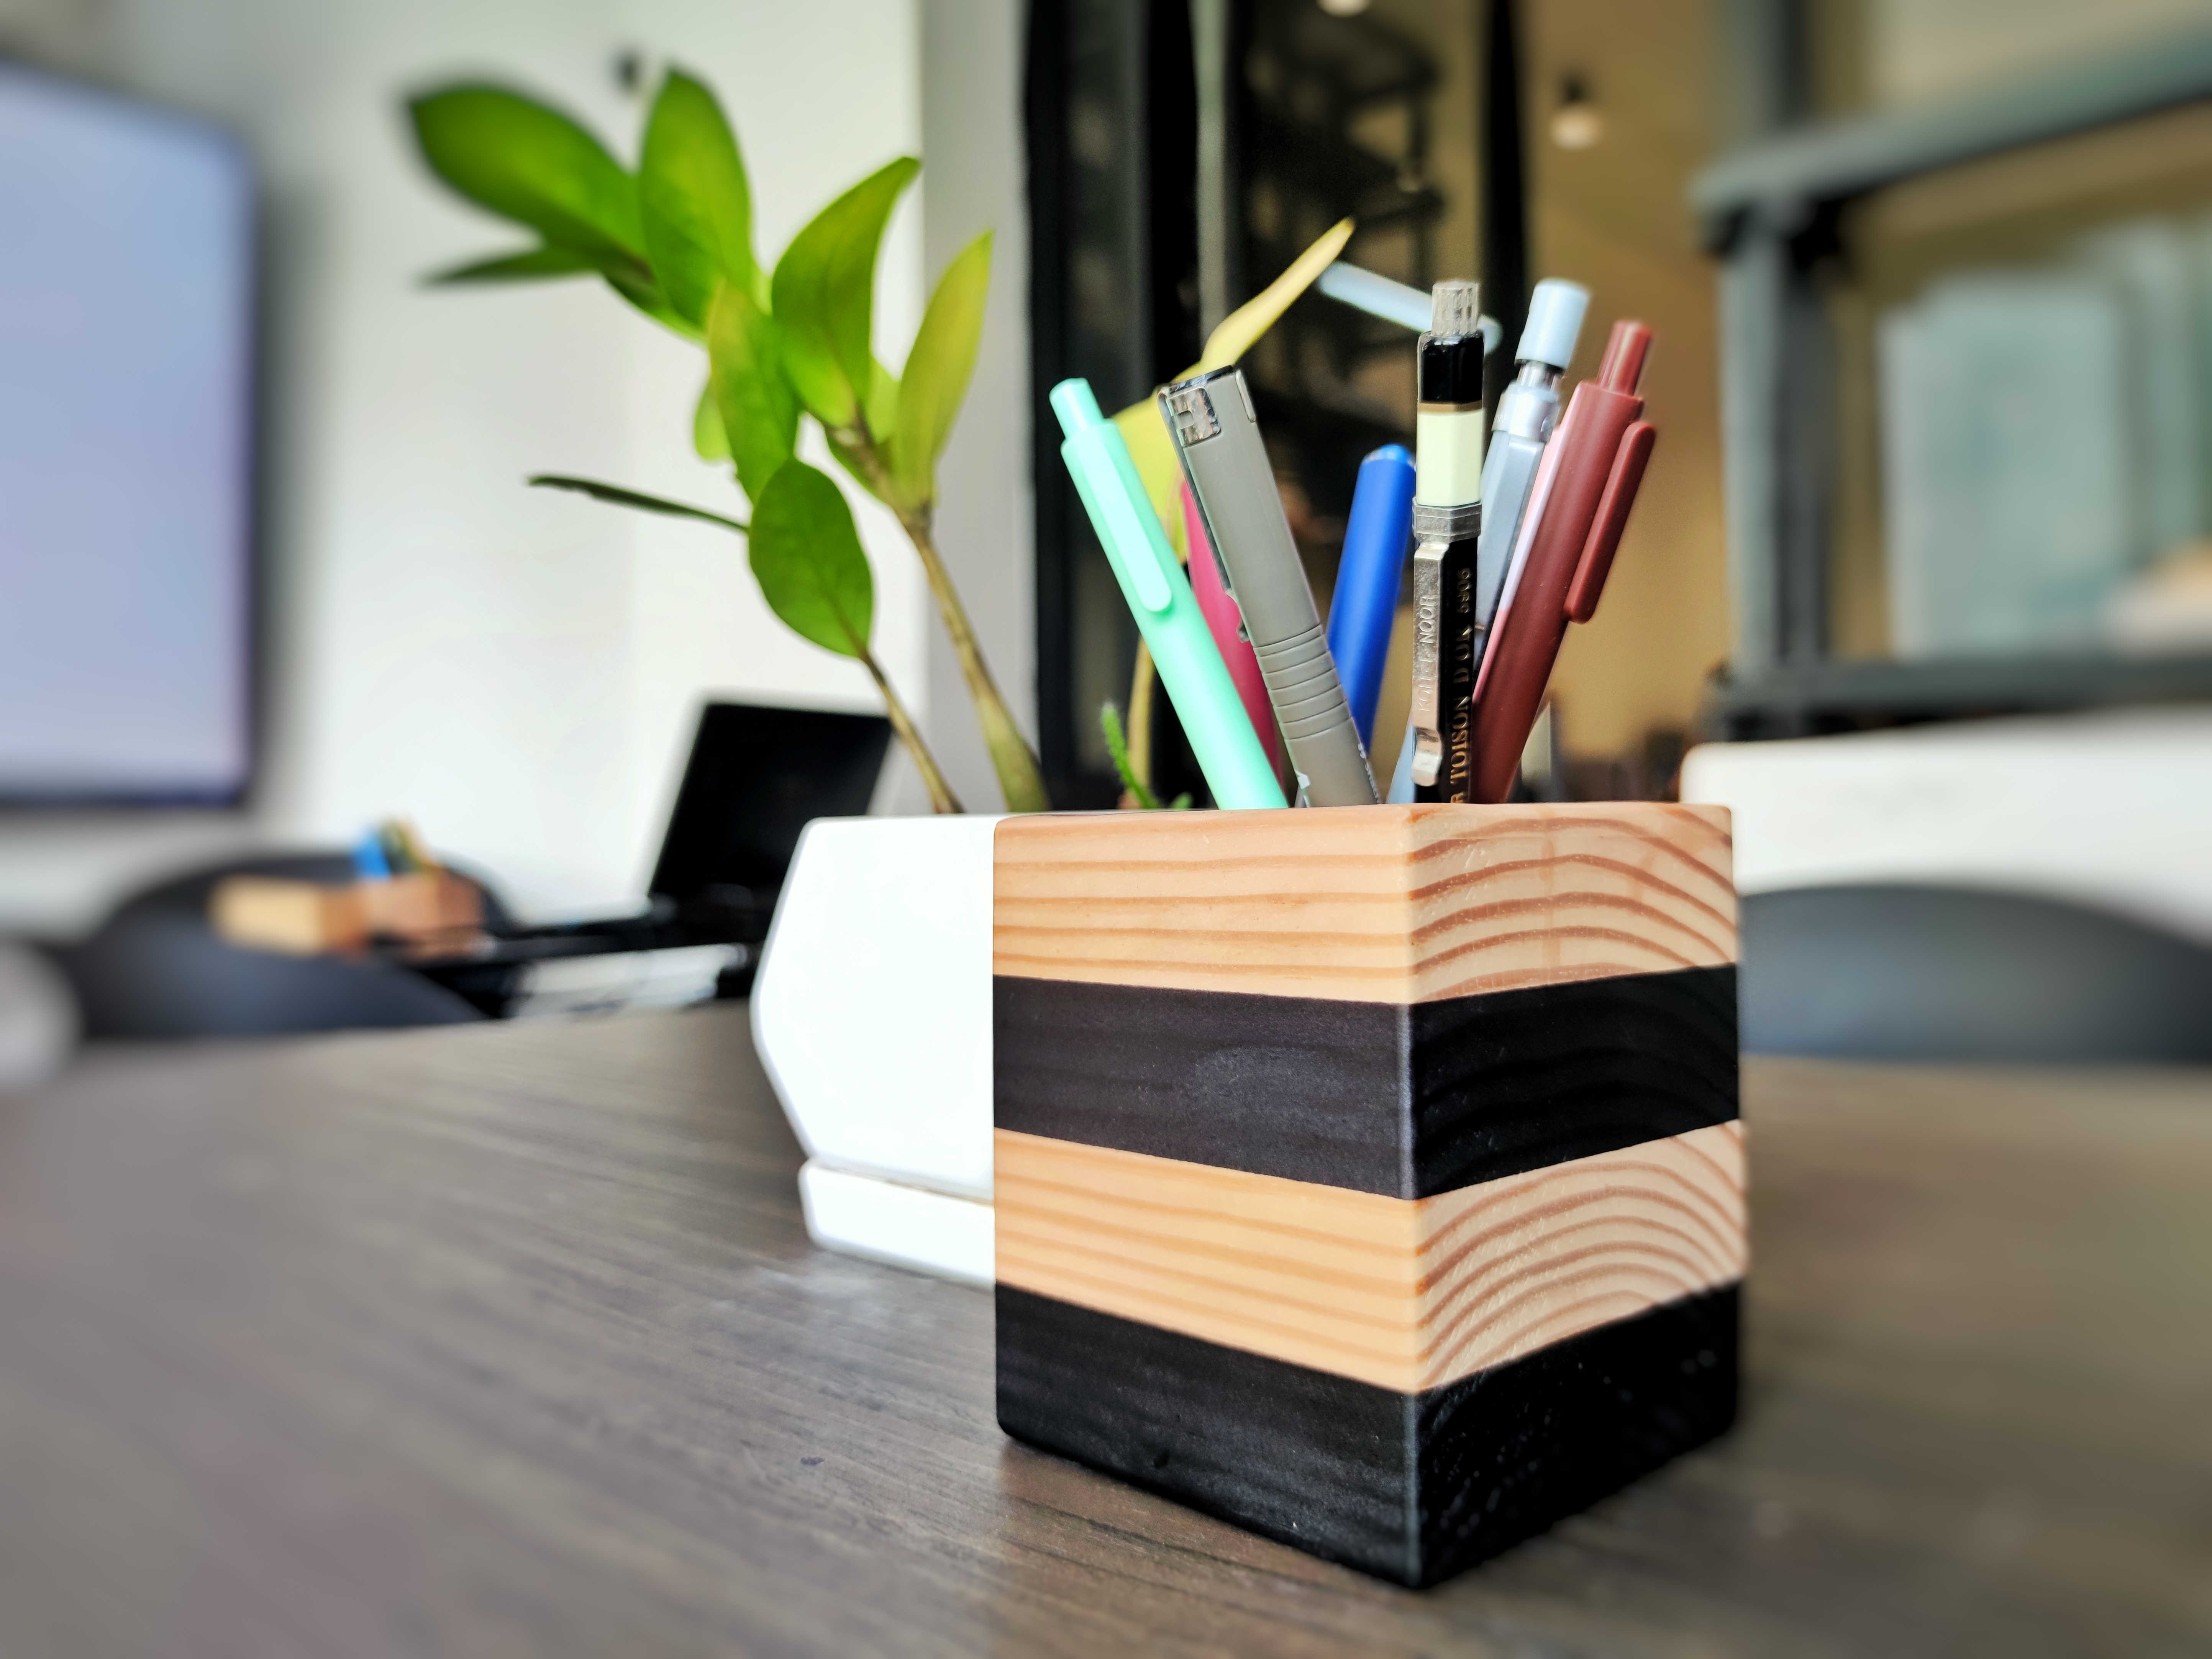 Hộp khay ống đựng cắm bút bằng gỗ THÔNG  MỸ để bàn Arch &amp; Home cao cấp dành cho bàn học, văn phòng, quà tặng độc đáo (PH008)